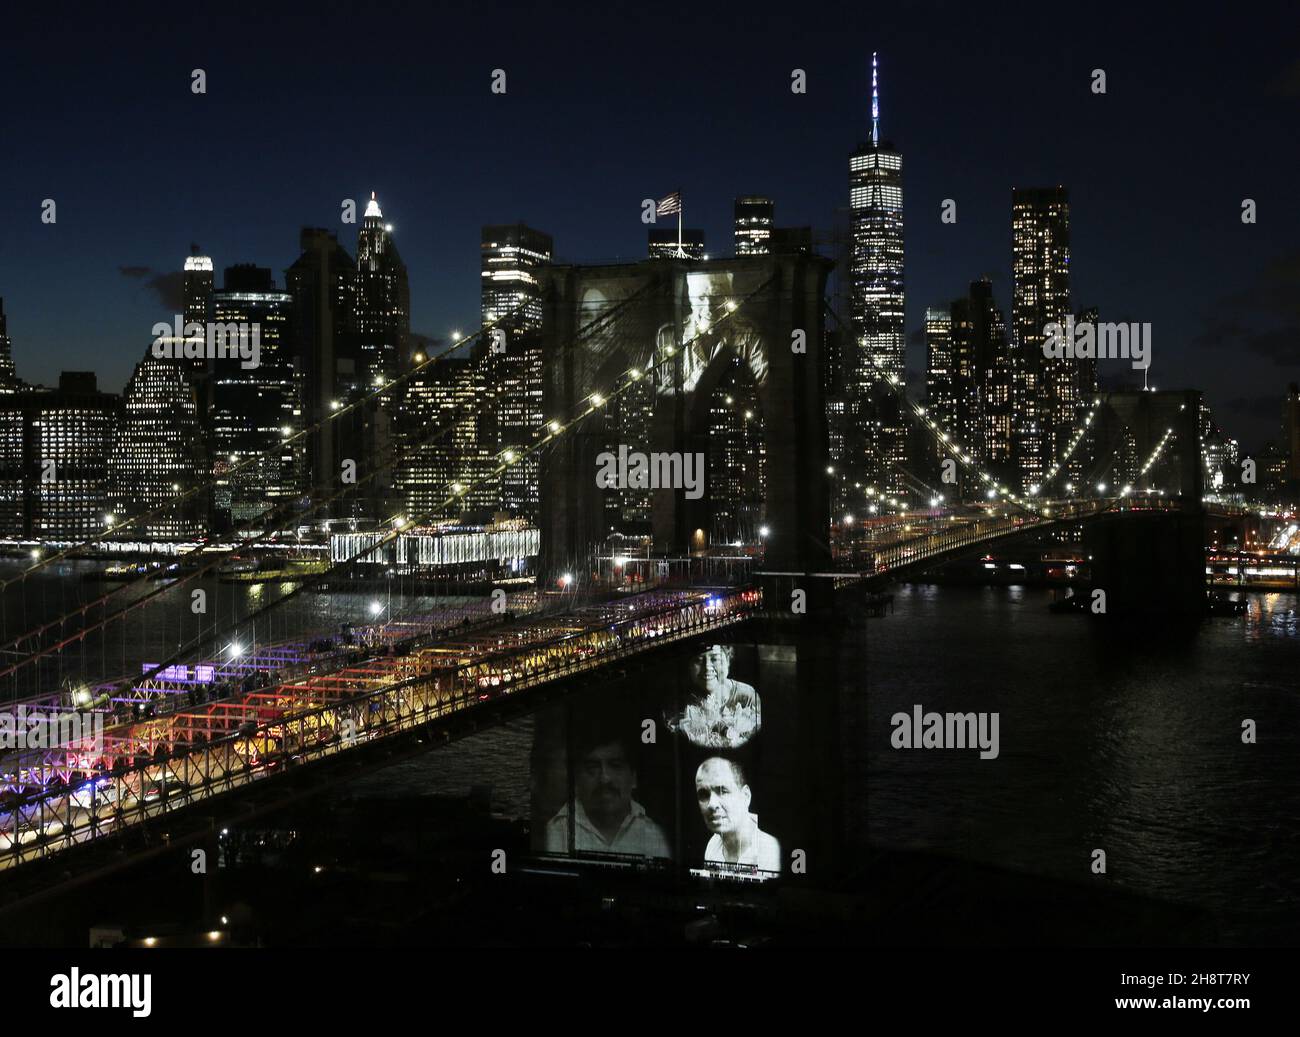 New Yorker, die aufgrund von COVID ihr Leben verloren haben, lassen ihre Bilder auf die Brooklyn Bridge projizieren, als Bürgermeister Bill de Blasio "A COVID-19 Day of Remembrance" veranstaltet, eine offizielle Gedenkfeier zu Ehren der mehr als 30.000 New Yorker, die während der Coronavirus-Pandemie in New York verloren gegangen sind Stadt am Sonntag, 14. März 2021. Hunderte von New Yorkern, die durch COVID ihr Leben verloren haben, haben ihre Bilder Sonntagabend auf die Brooklyn Bridge projiziert, als Teil des virtuellen Denkmals der Stadt, das die Erinnerung an die lokalen COVID-19-Opfer ehrt. Foto von John Angelillo/UPI Stockfoto